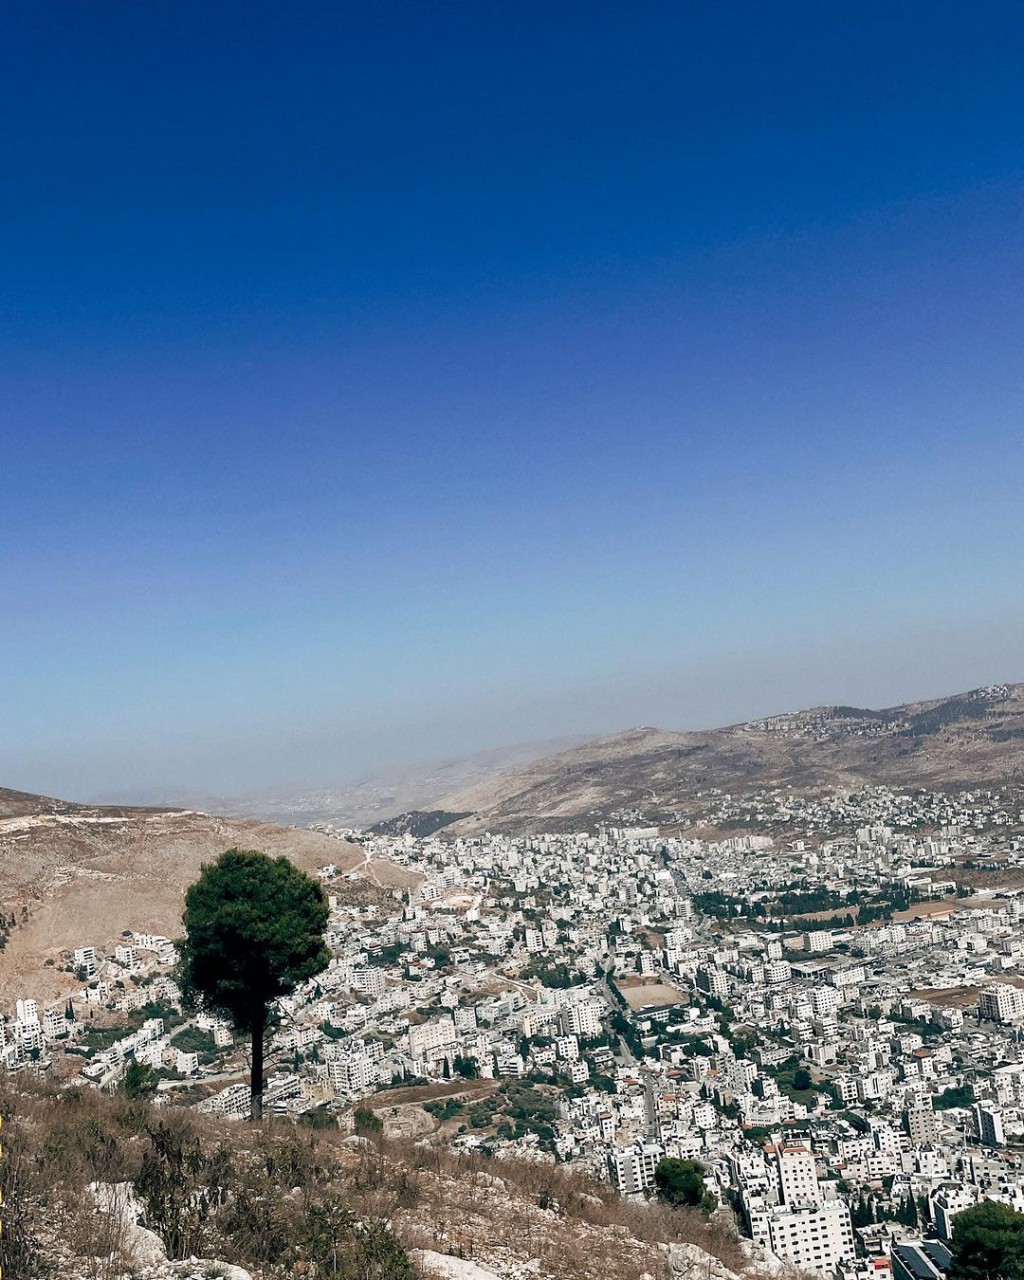 衛詩9月25日時曾分享一張以色列風景照。